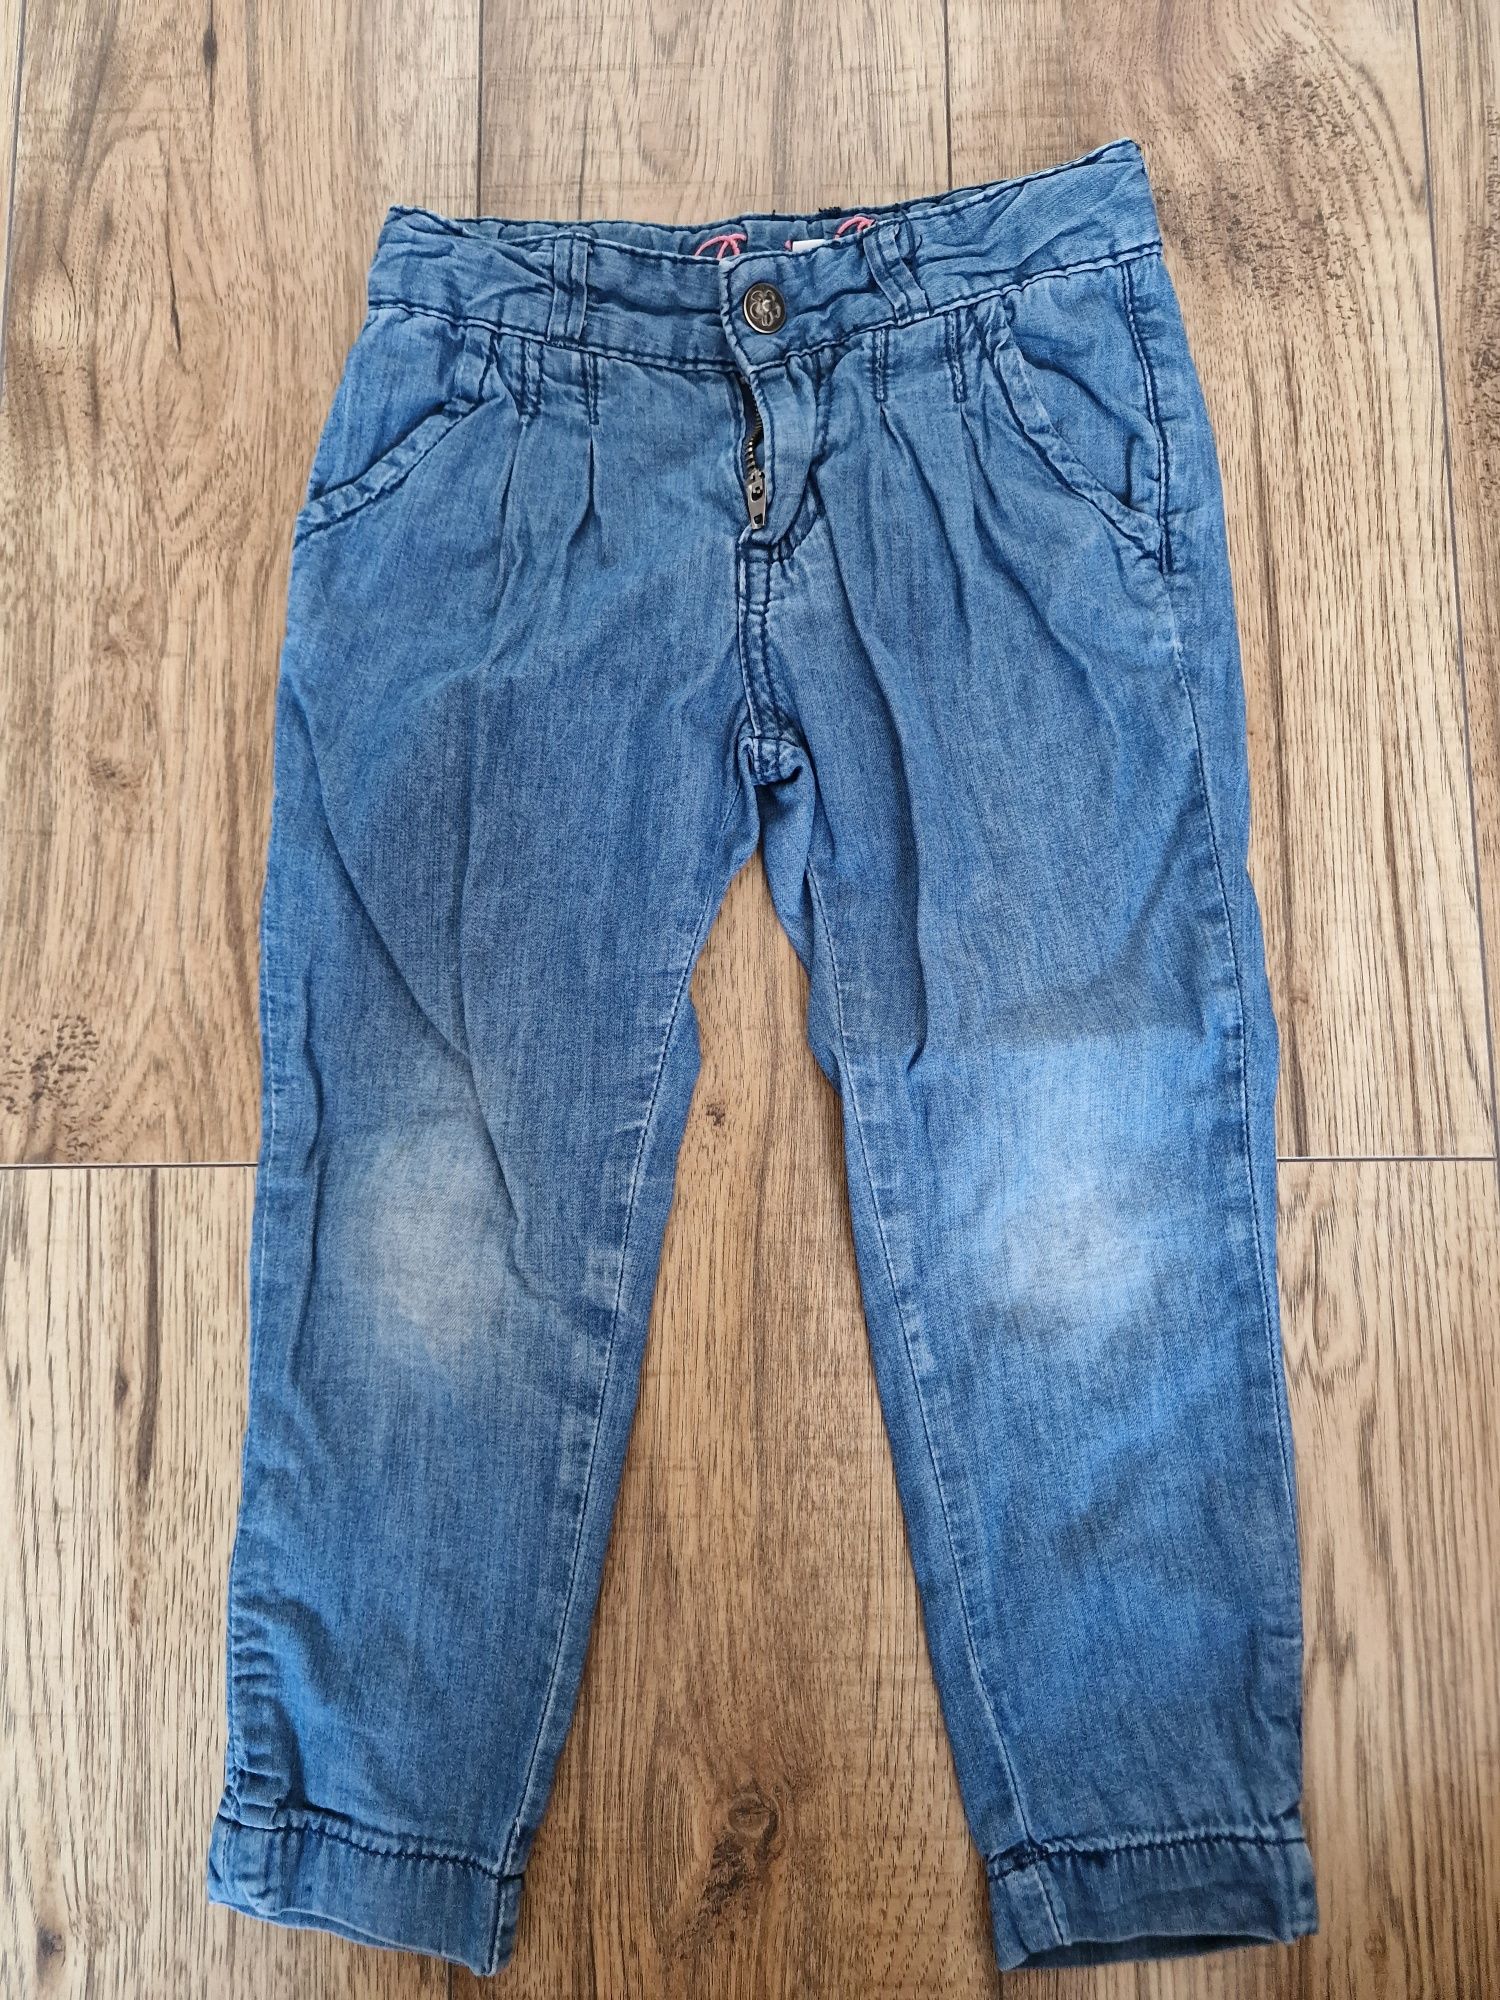 Letnie spodnie jeansowe 98 cm 2-3 latka miękkie Denim Co.